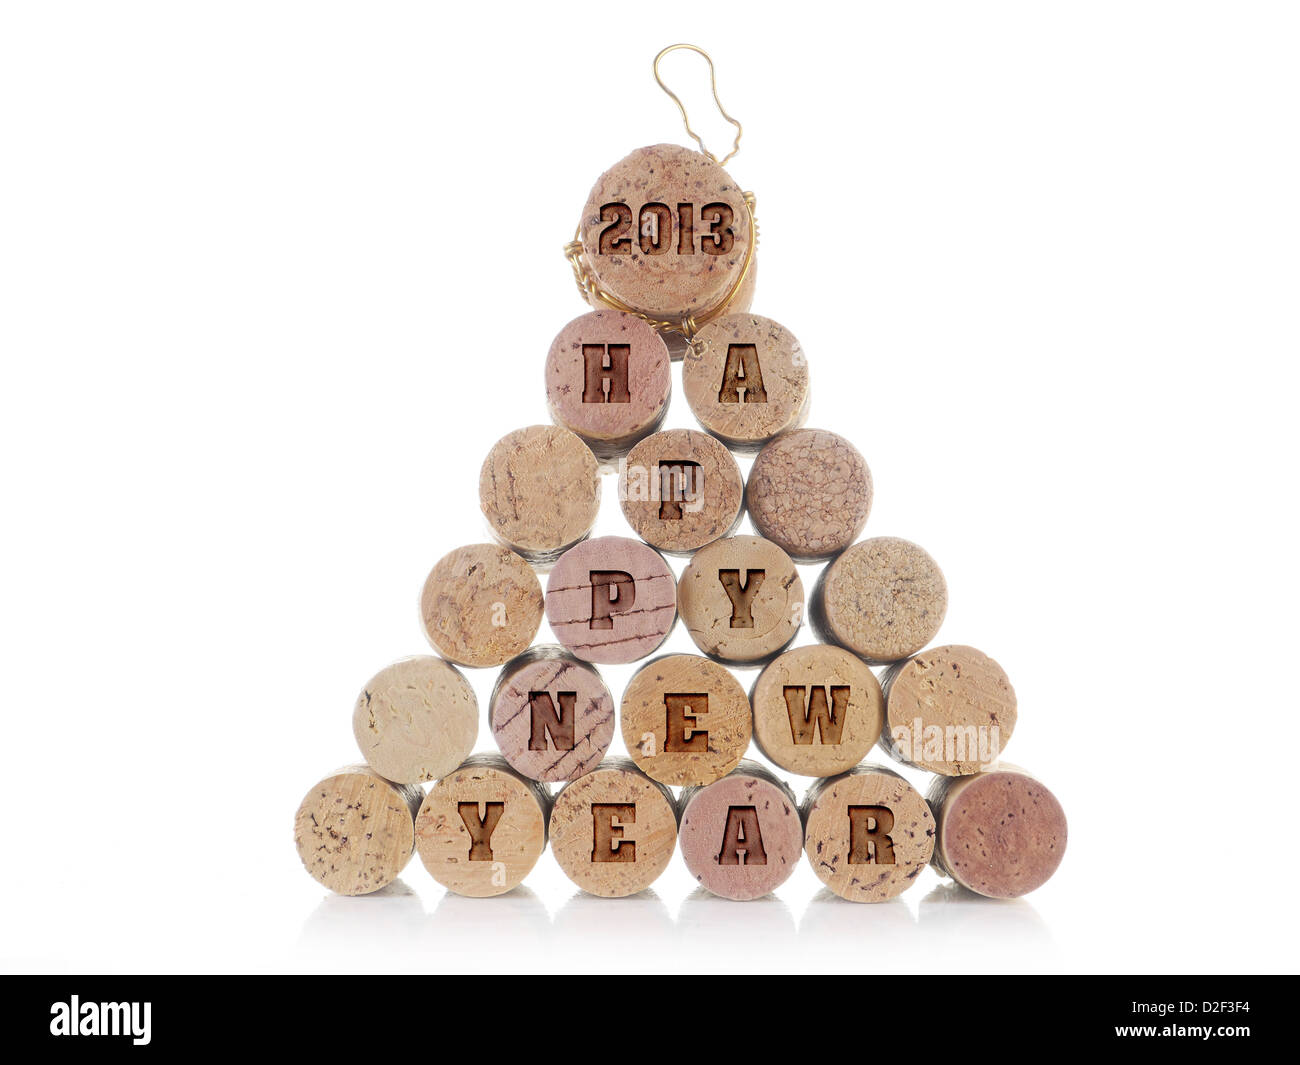 Vin et champagne bouchons disposés en pyramide avec imprimé 2013 Bonne année mots over white background Banque D'Images